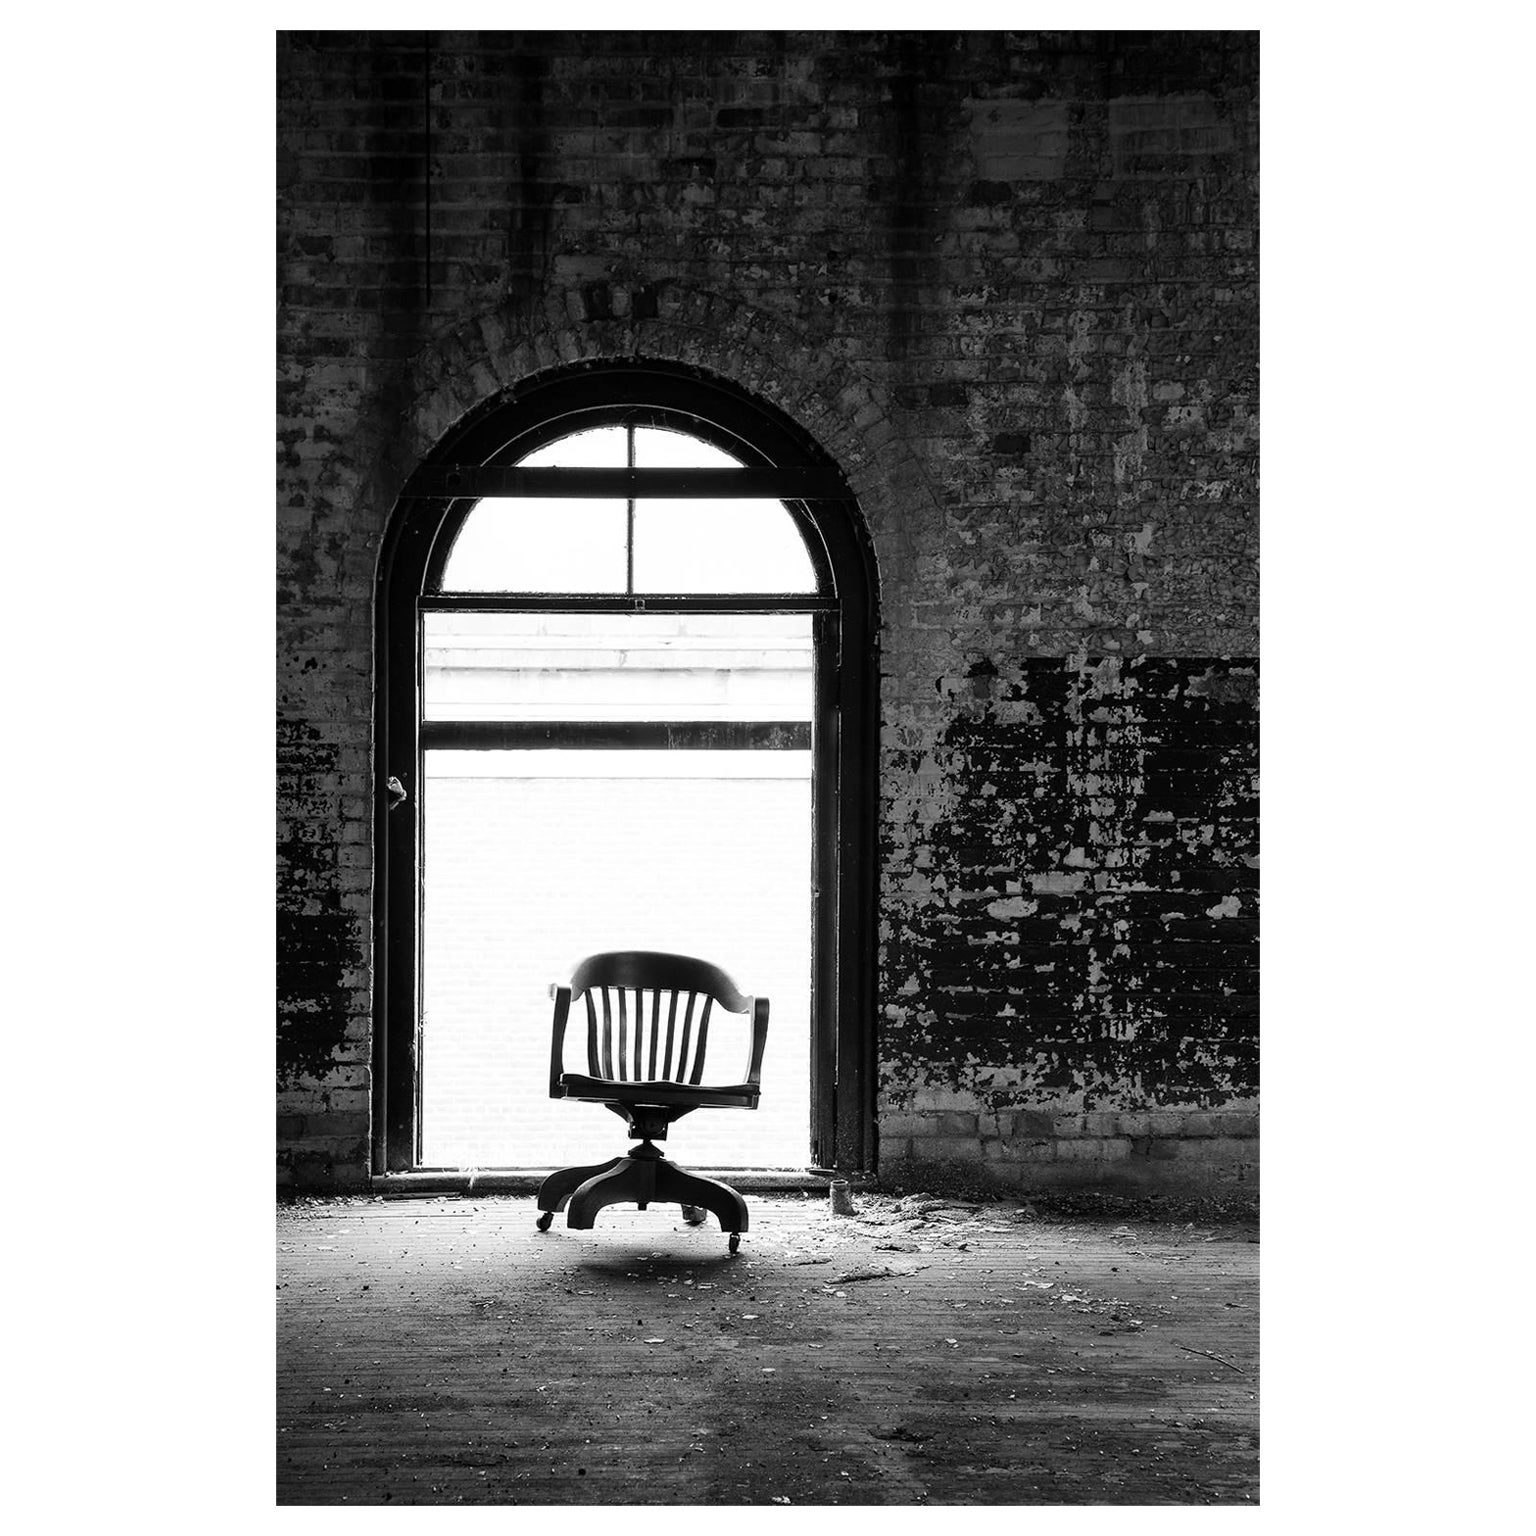 Rebecca Skinner Black and White Photograph – "Dancing Chair", zeitgenössisch, schwarz, weiß, Fabrik, industriell, Fotografie